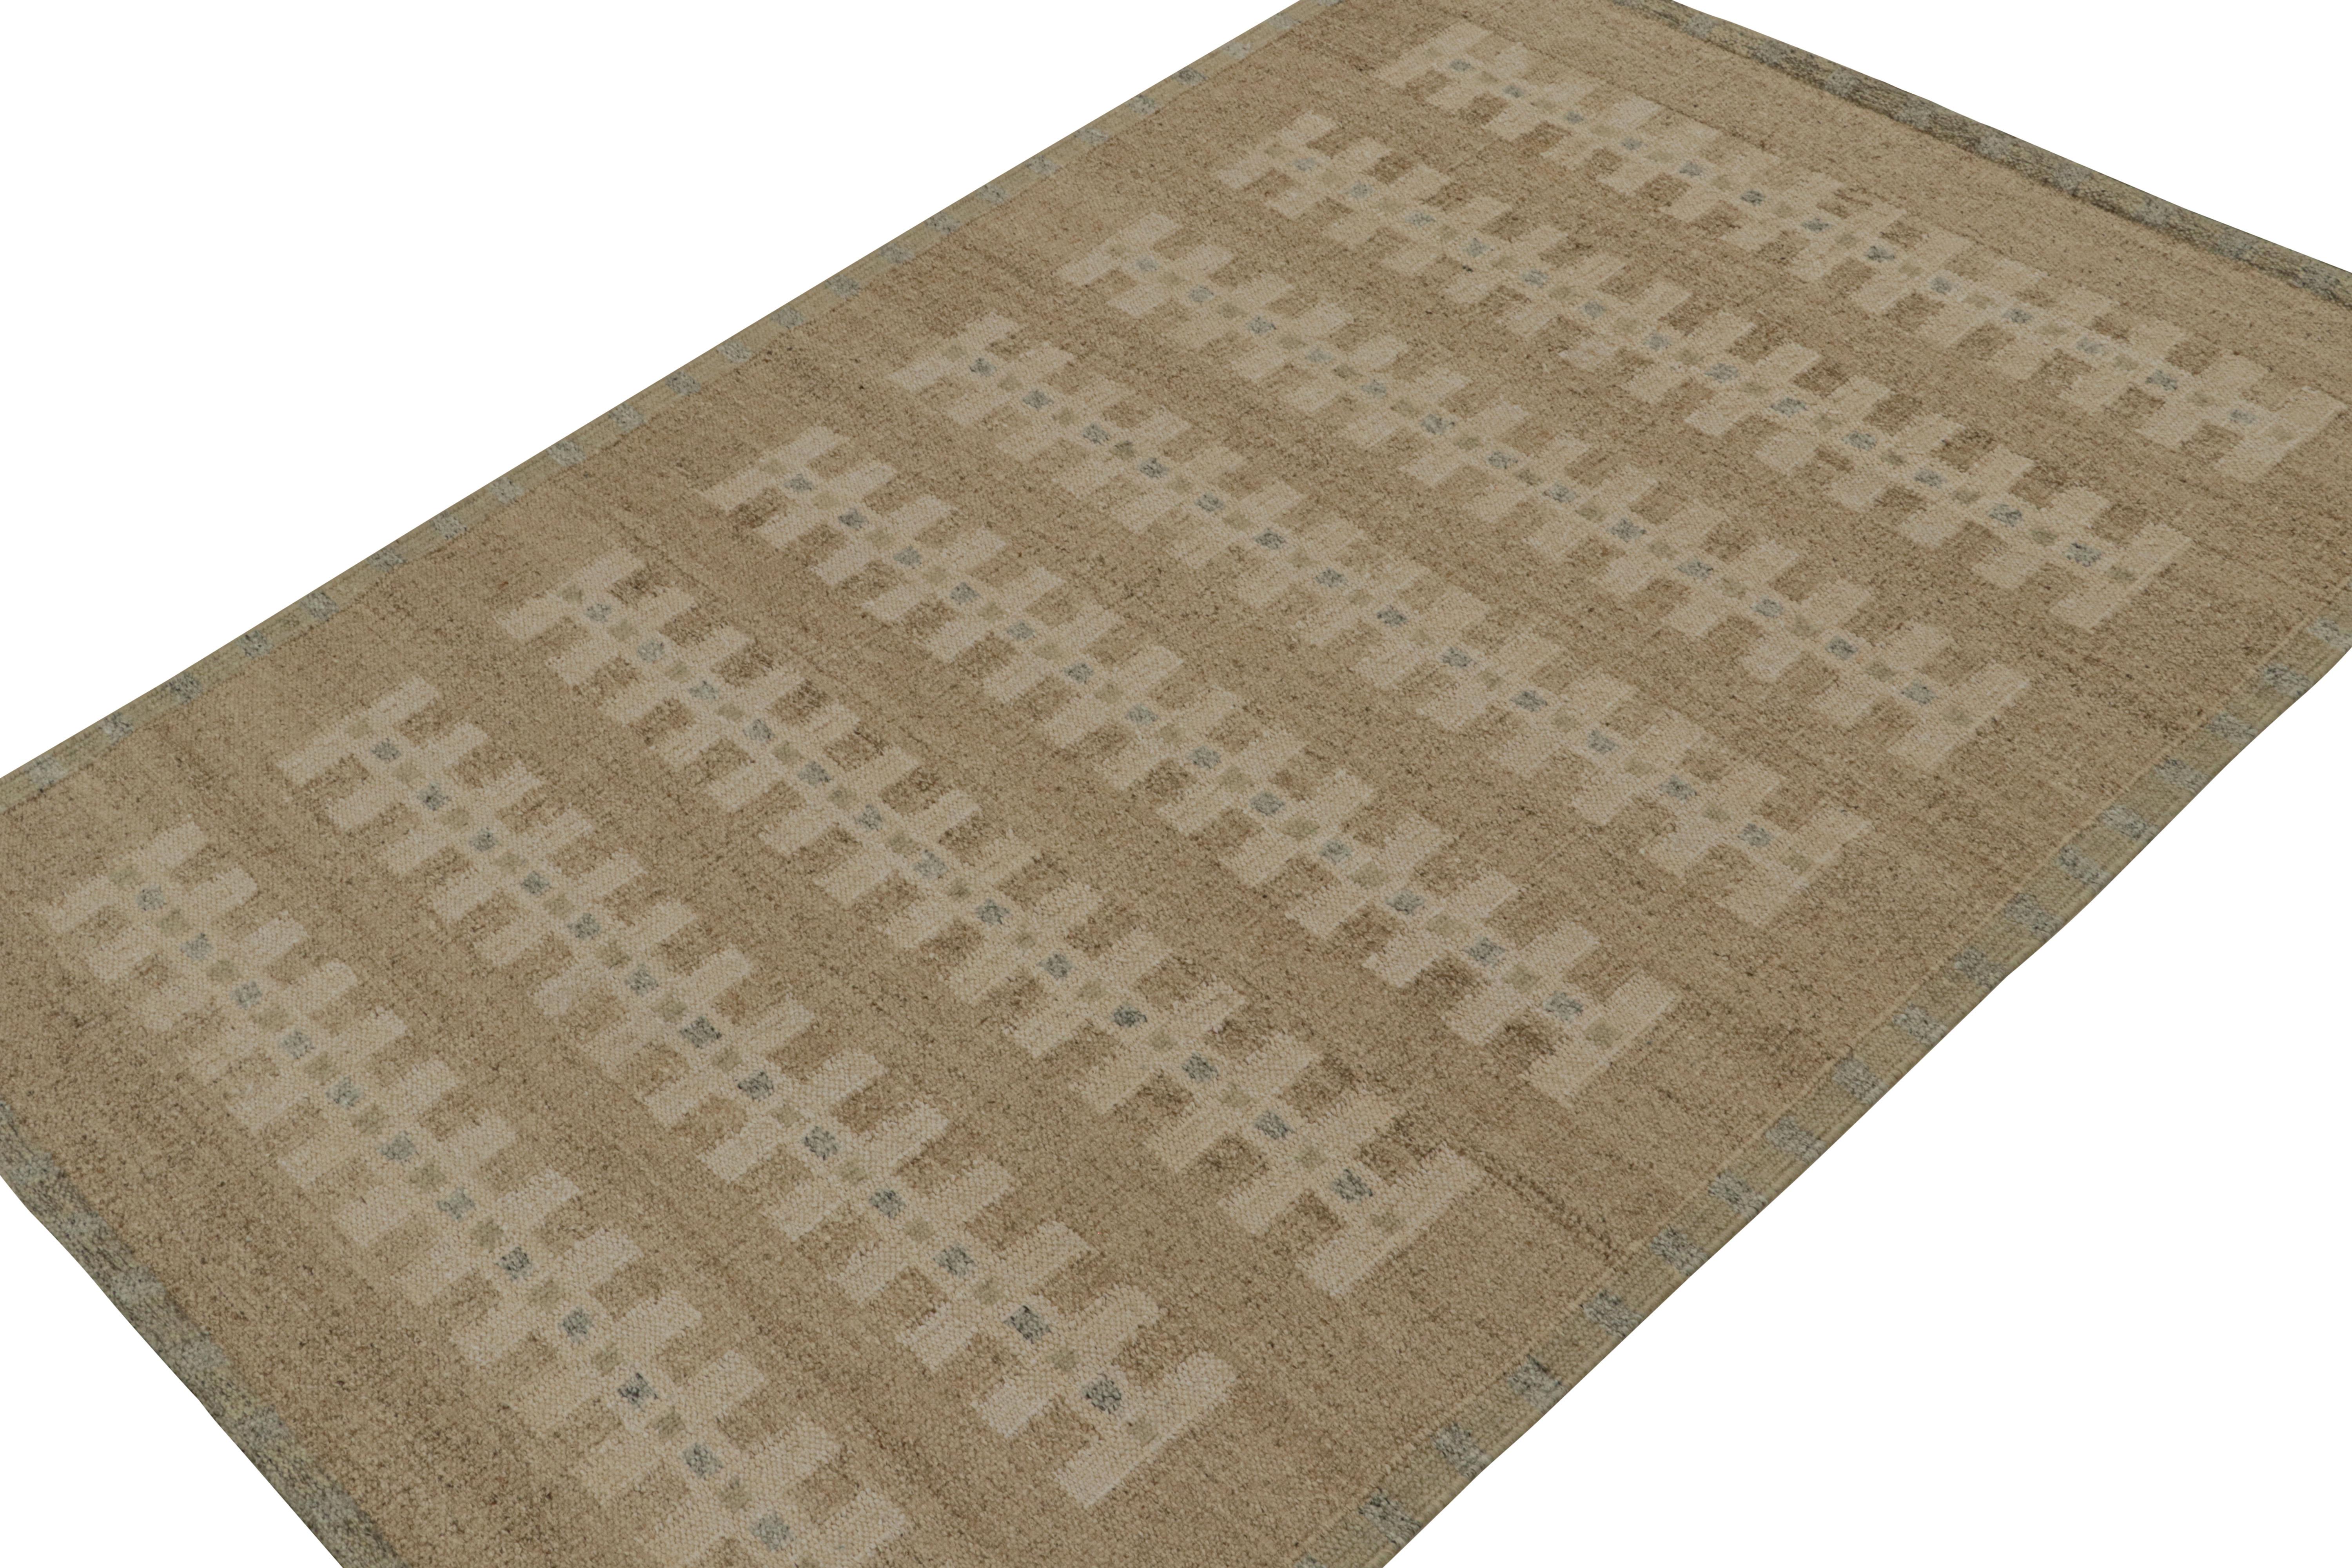 Ce kilim 6x9 de style suédois fait partie de la collection de tapis scandinaves de Rug & Kilim. Tissé à la main en laine, coton et fils naturels, ce tissage plat est une version contemporaine des tapis suédois déco Rollakans et Rya.

Sur le Design :